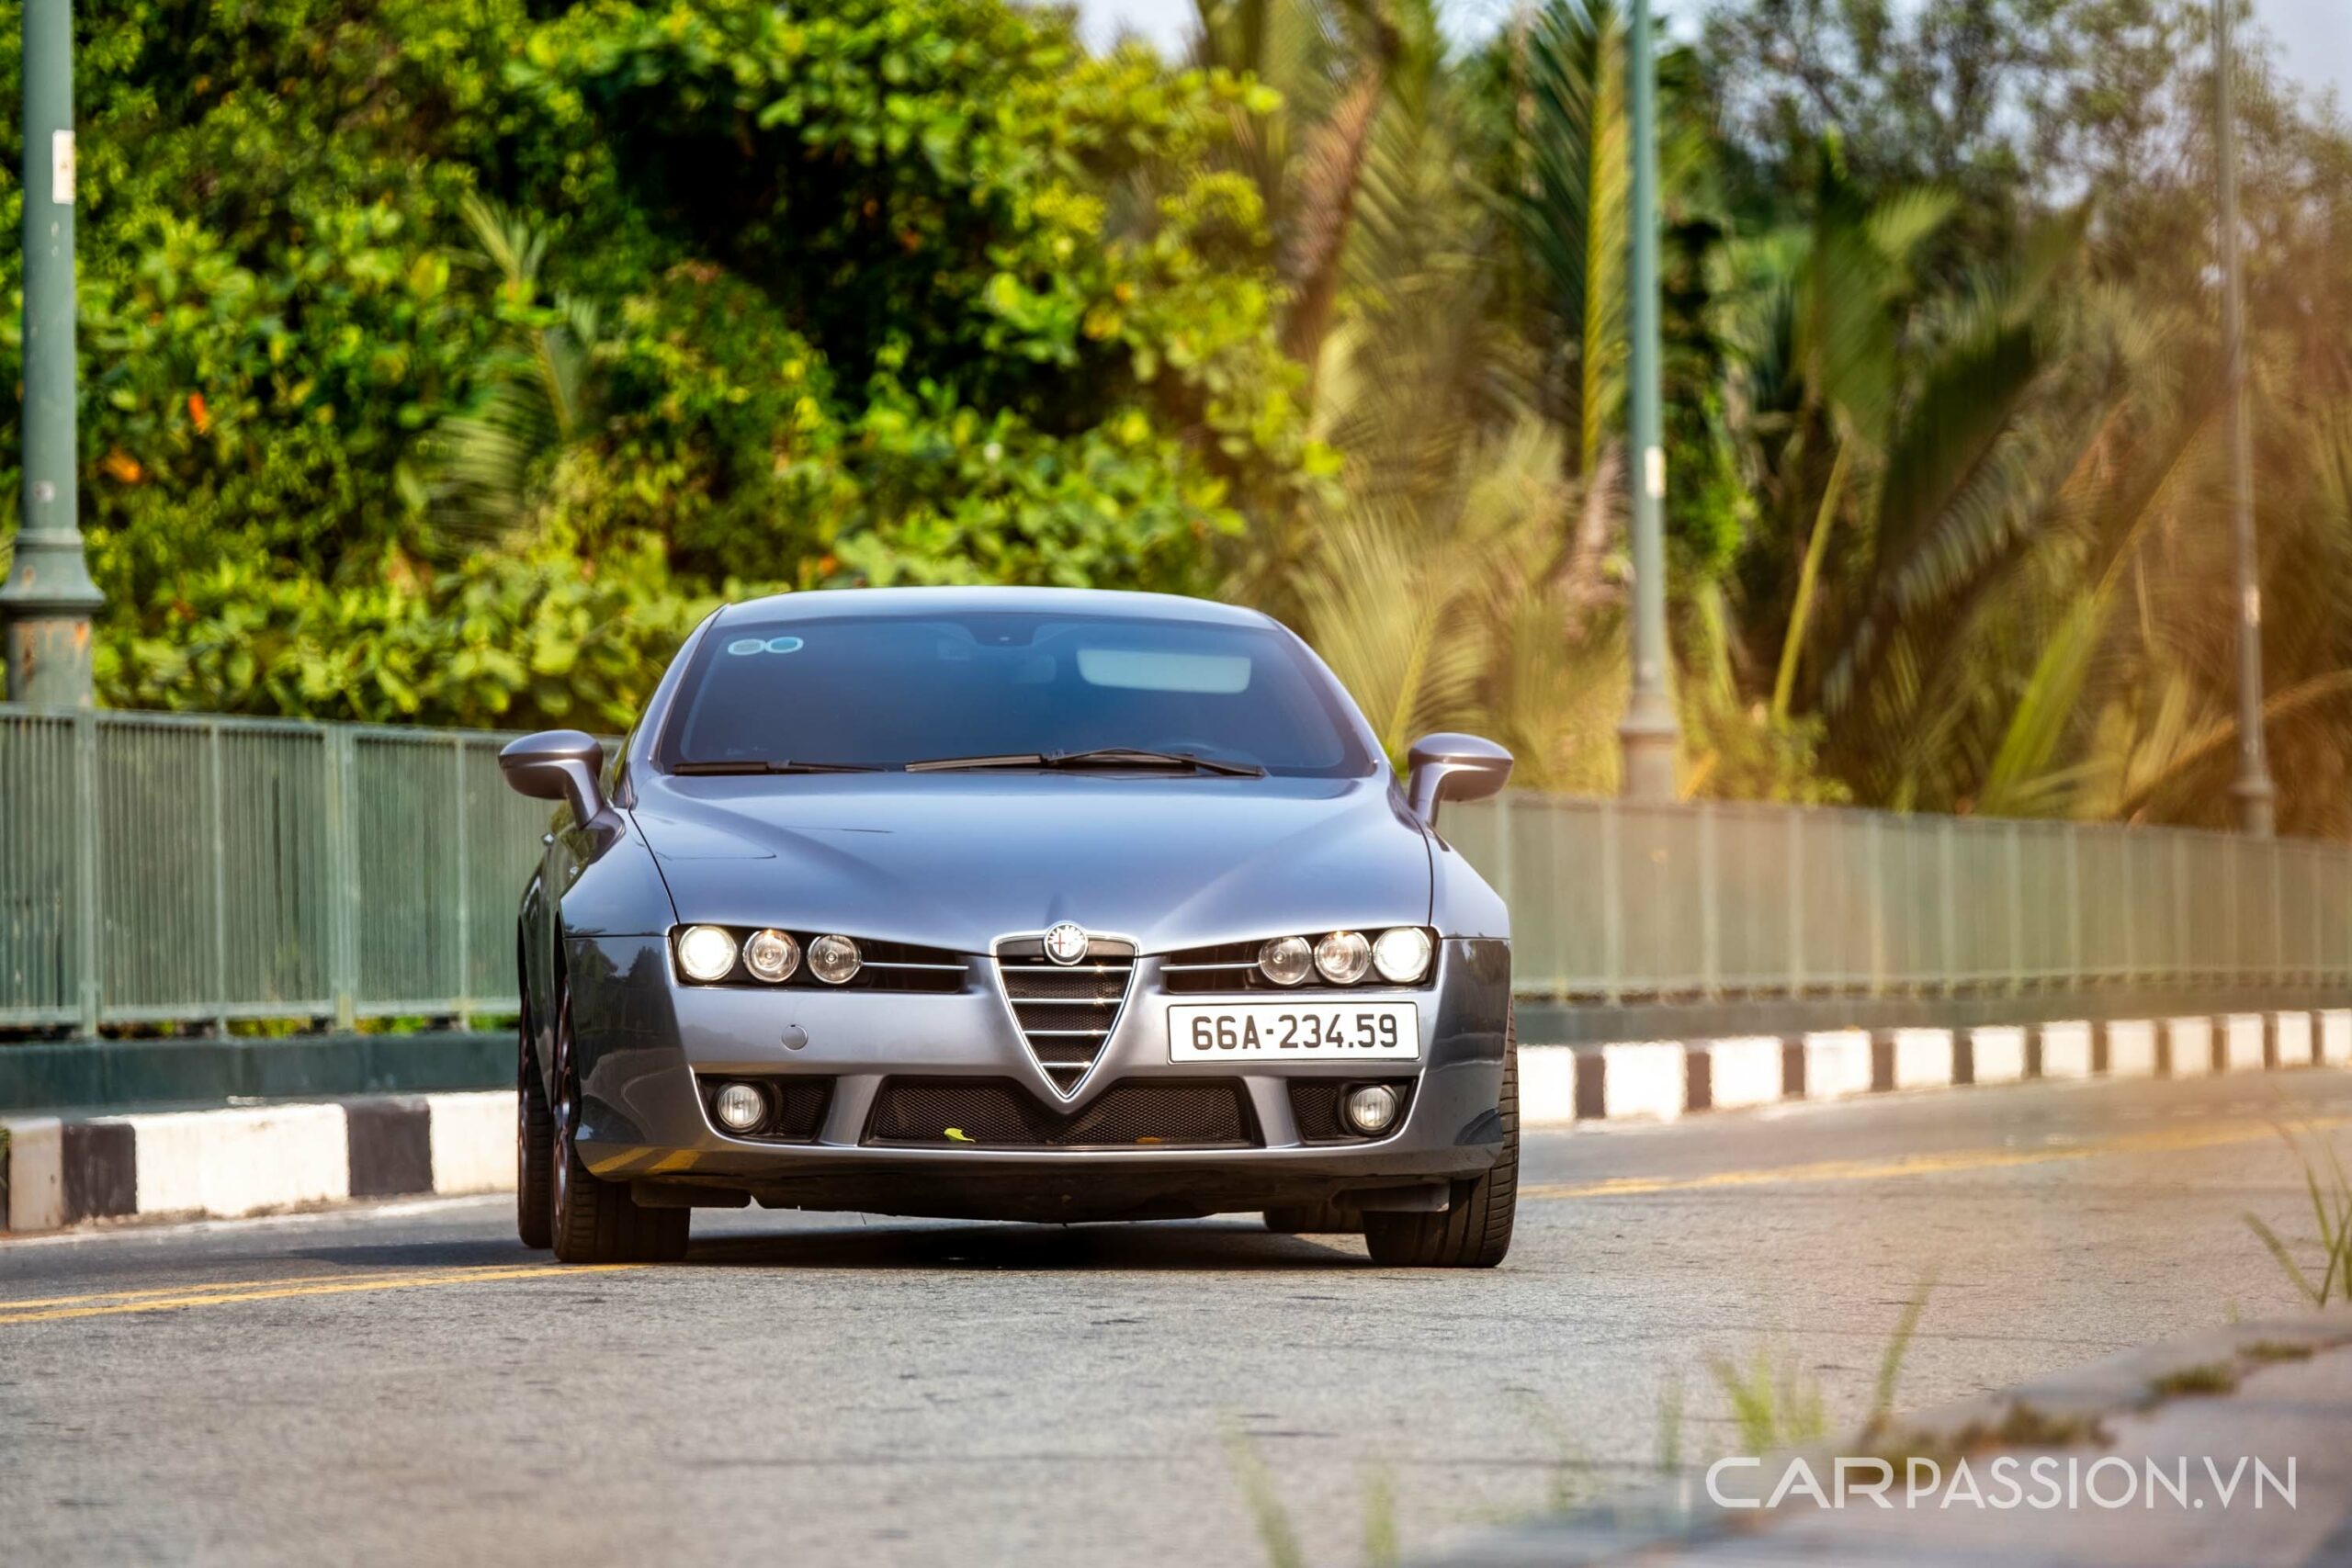 Đánh giá Alfa Romeo Brera: Coupe hai cửa cực hiếm tại Việt Nam, xứng đáng để sưu tầm